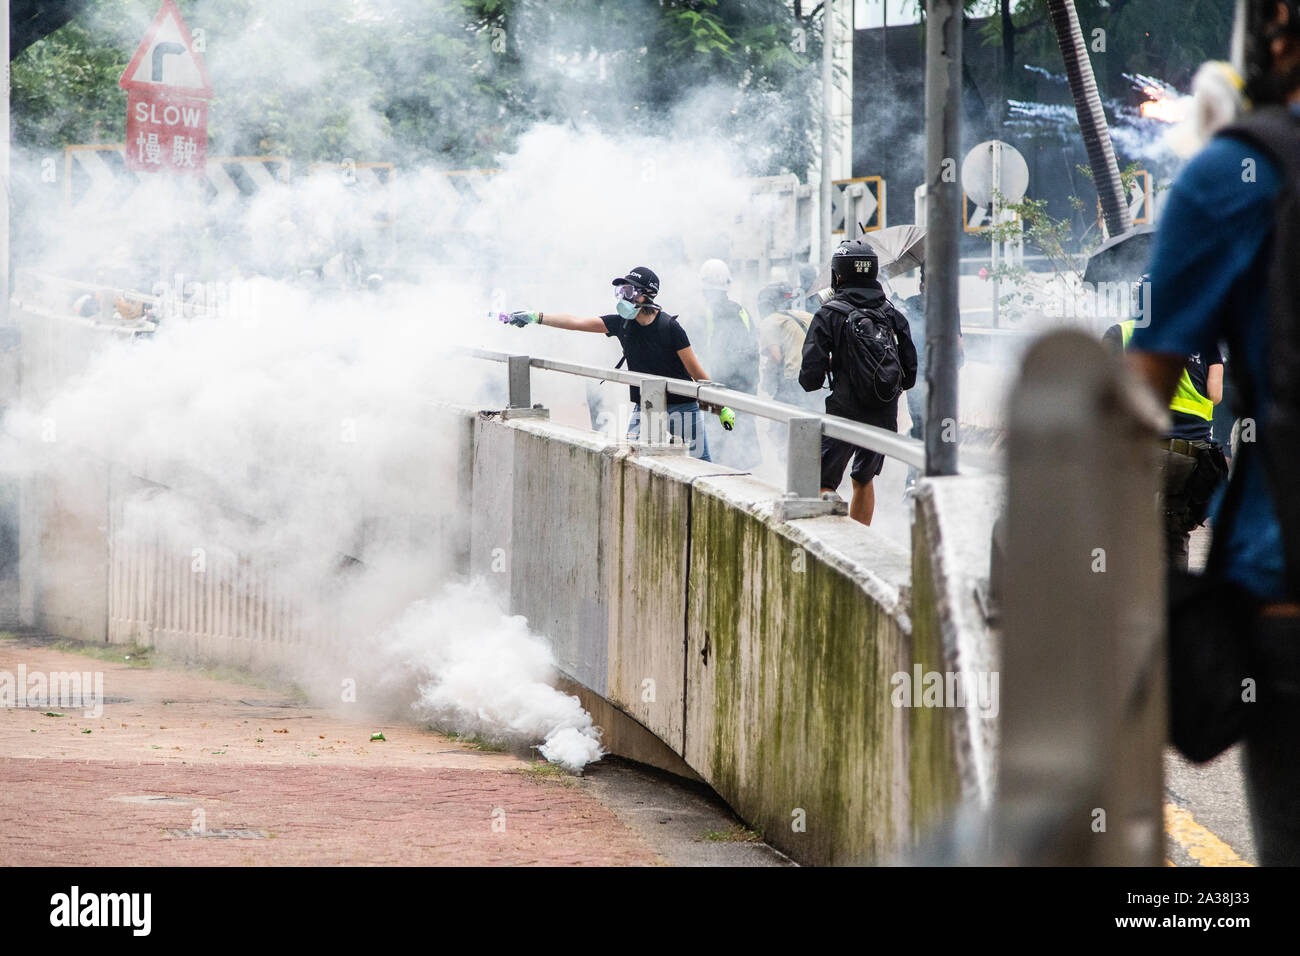 Ein Demonstrant versucht, während der Demonstration mit Tränengas mit Wasser legen. Eingabe der 18 Wochenende der Unruhen, Demonstranten marschierten im Regen nach einer Anti-mask Gesetz wurde in einer Bemühung, Demonstrationen abzuhalten. Die Demonstranten skandierten Parolen und fuhr fort zu Fragen für die fünf Forderungen erfüllt werden. Die Demonstranten zu Zusammenstößen zwischen Polizei und wurden mit Gas, Gummigeschossen getroffen, und einer Wasserkanone bis mehrere wurden schließlich verhaftet. Stockfoto